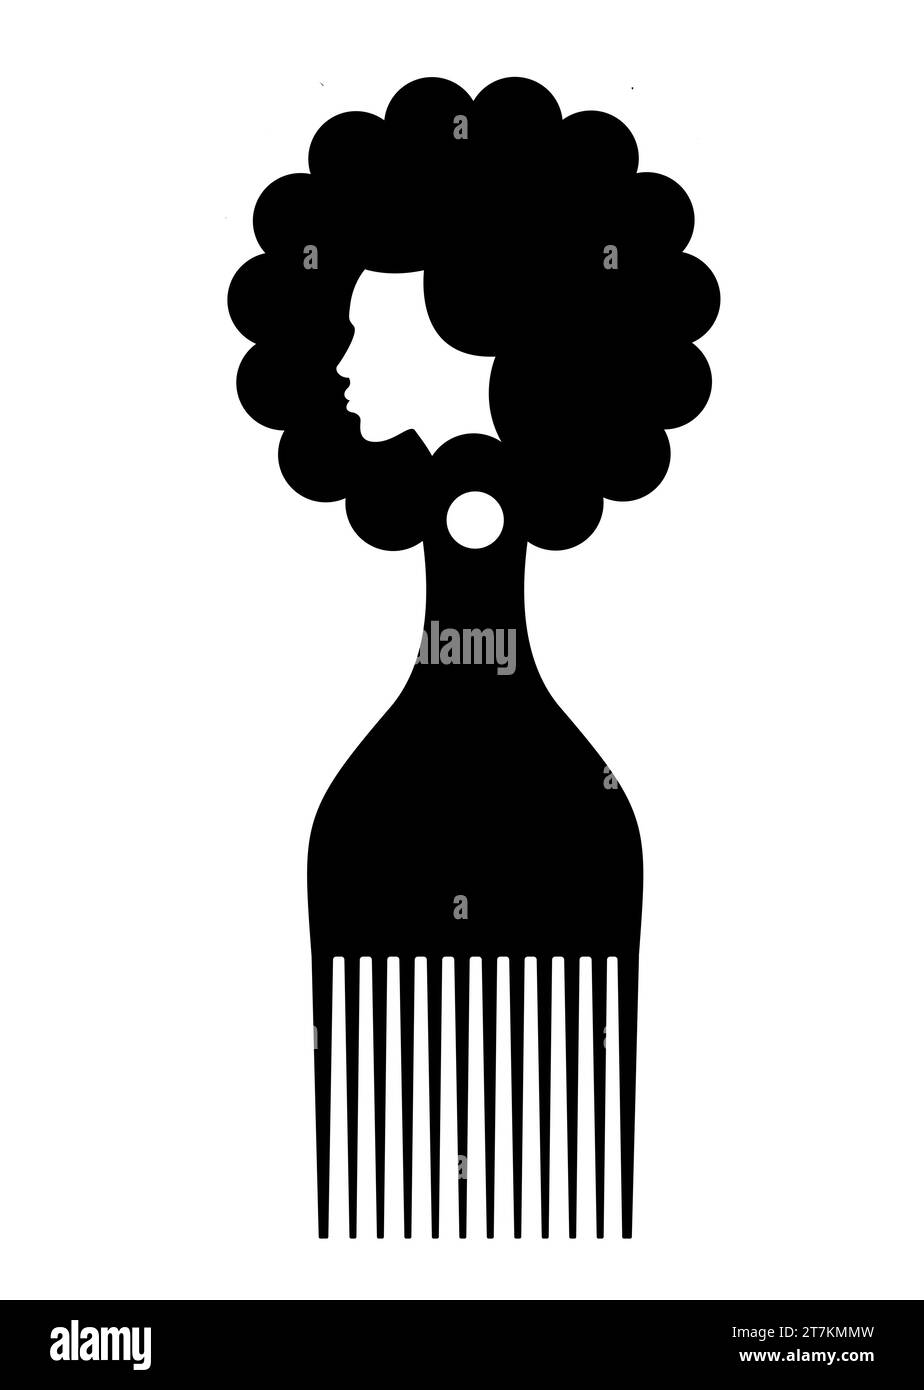 symbole de peigne afro, signe de brosse à cheveux africaine pour les cheveux bouclés, conception plate simple de silhouette de femme africaine noire, illustration vectorielle isolée sur blanc Illustration de Vecteur